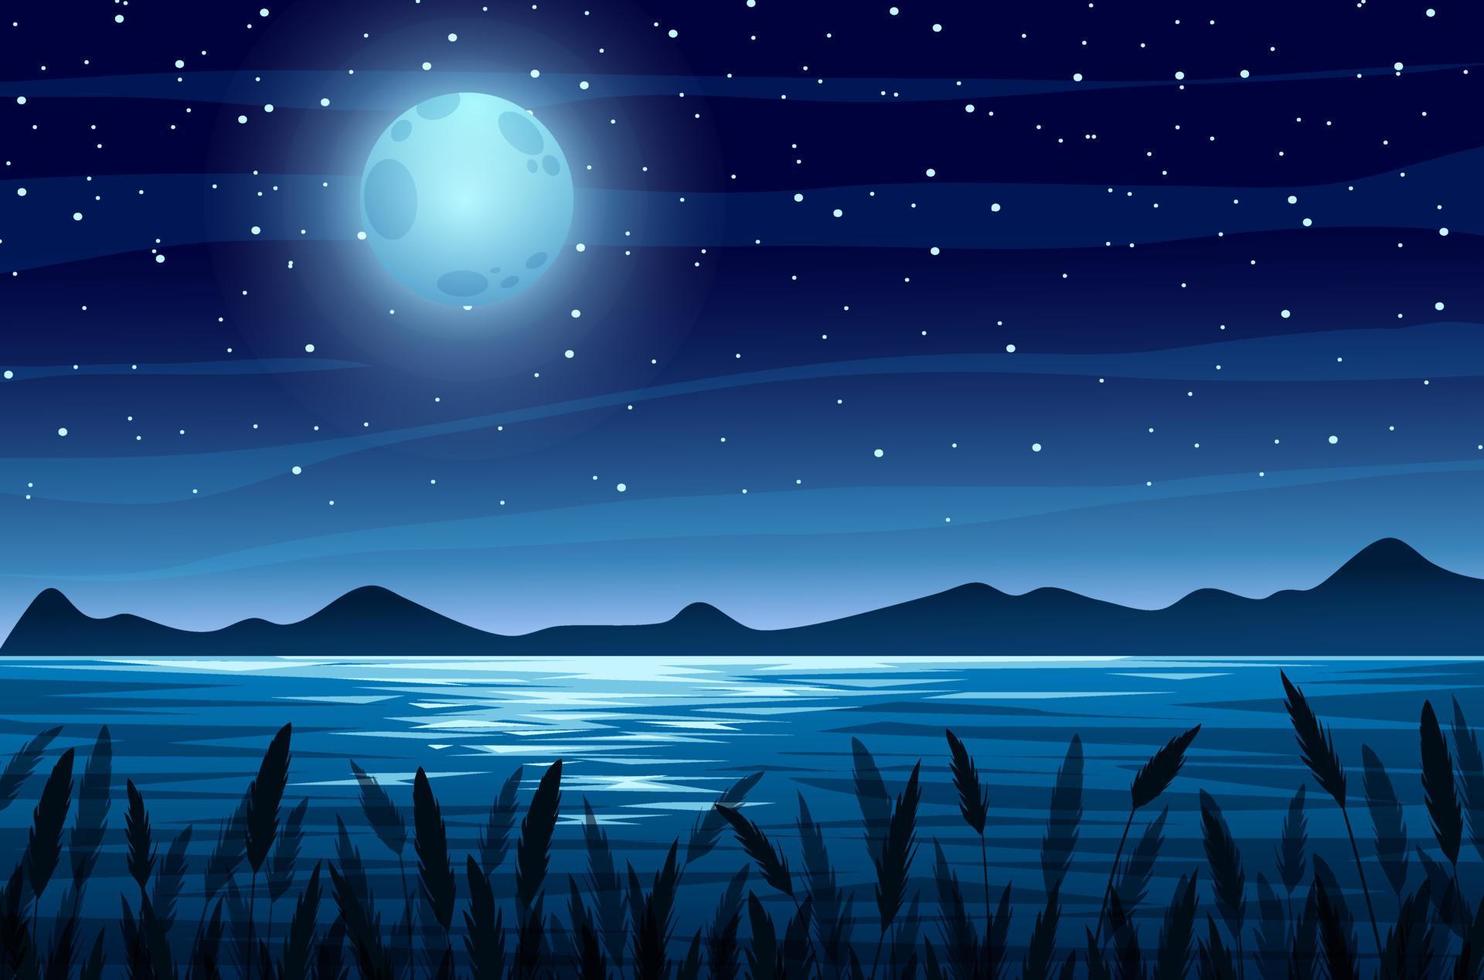 paesaggio fluviale con sfondo notturno di luna piena vettore